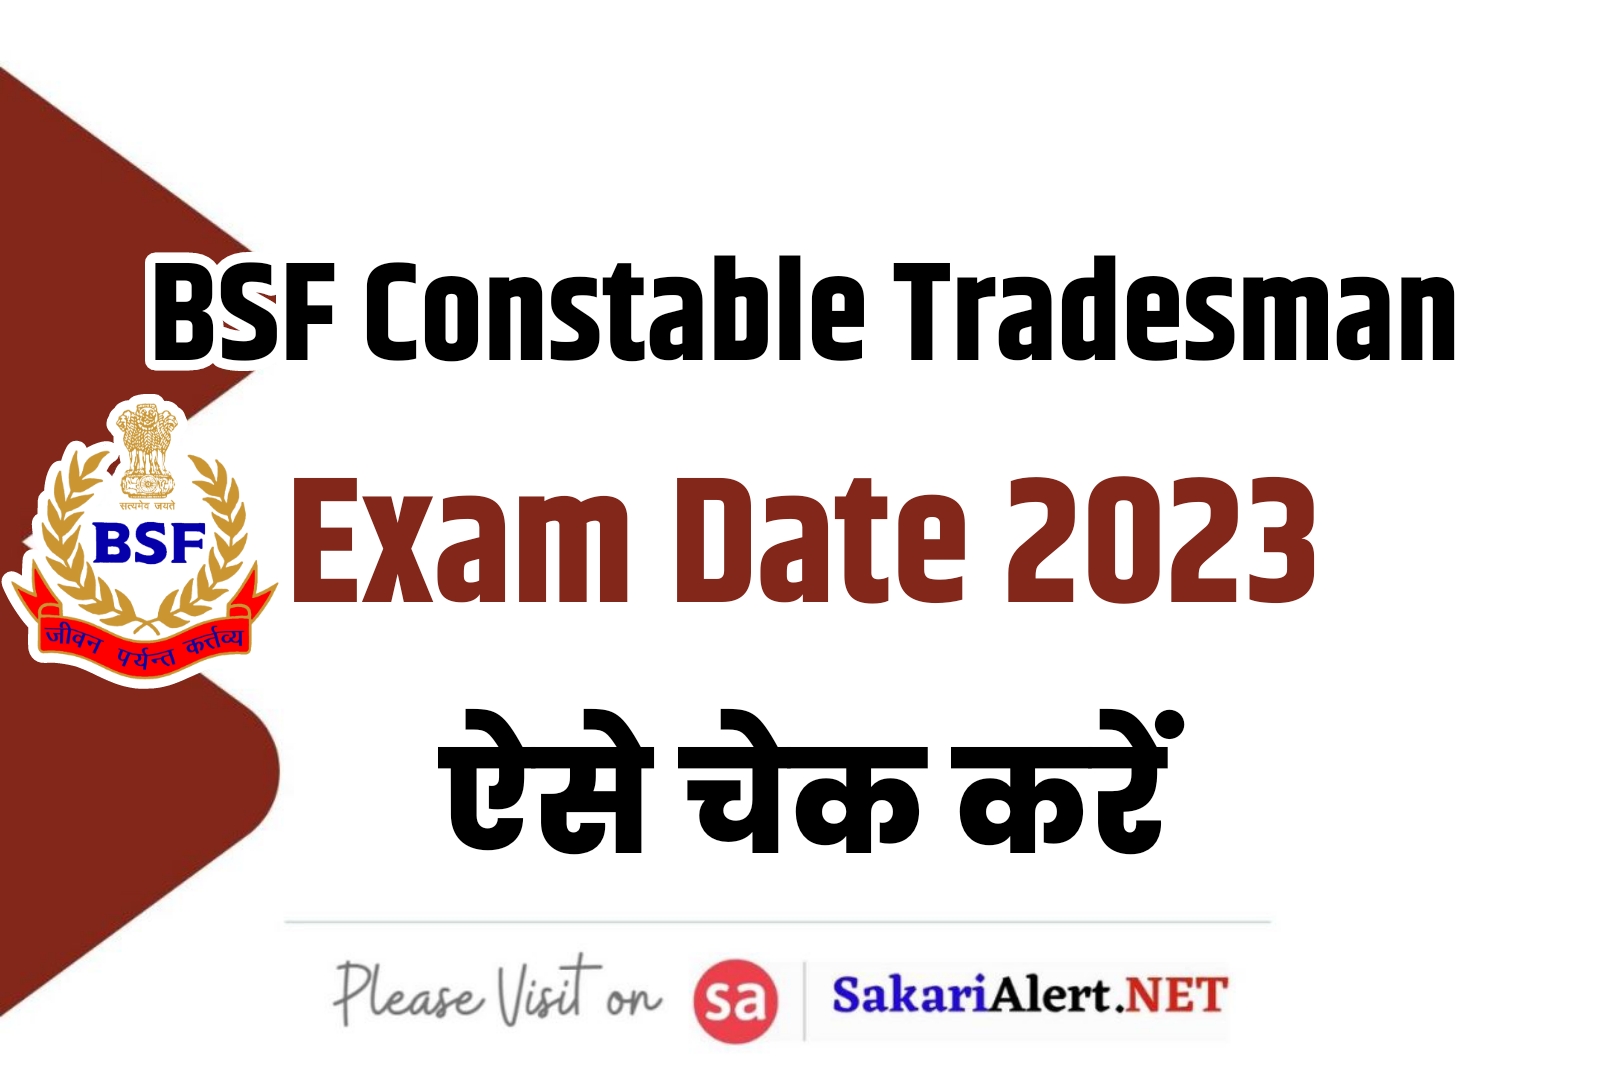 BSF Constable Tradesman Exam Date 2023